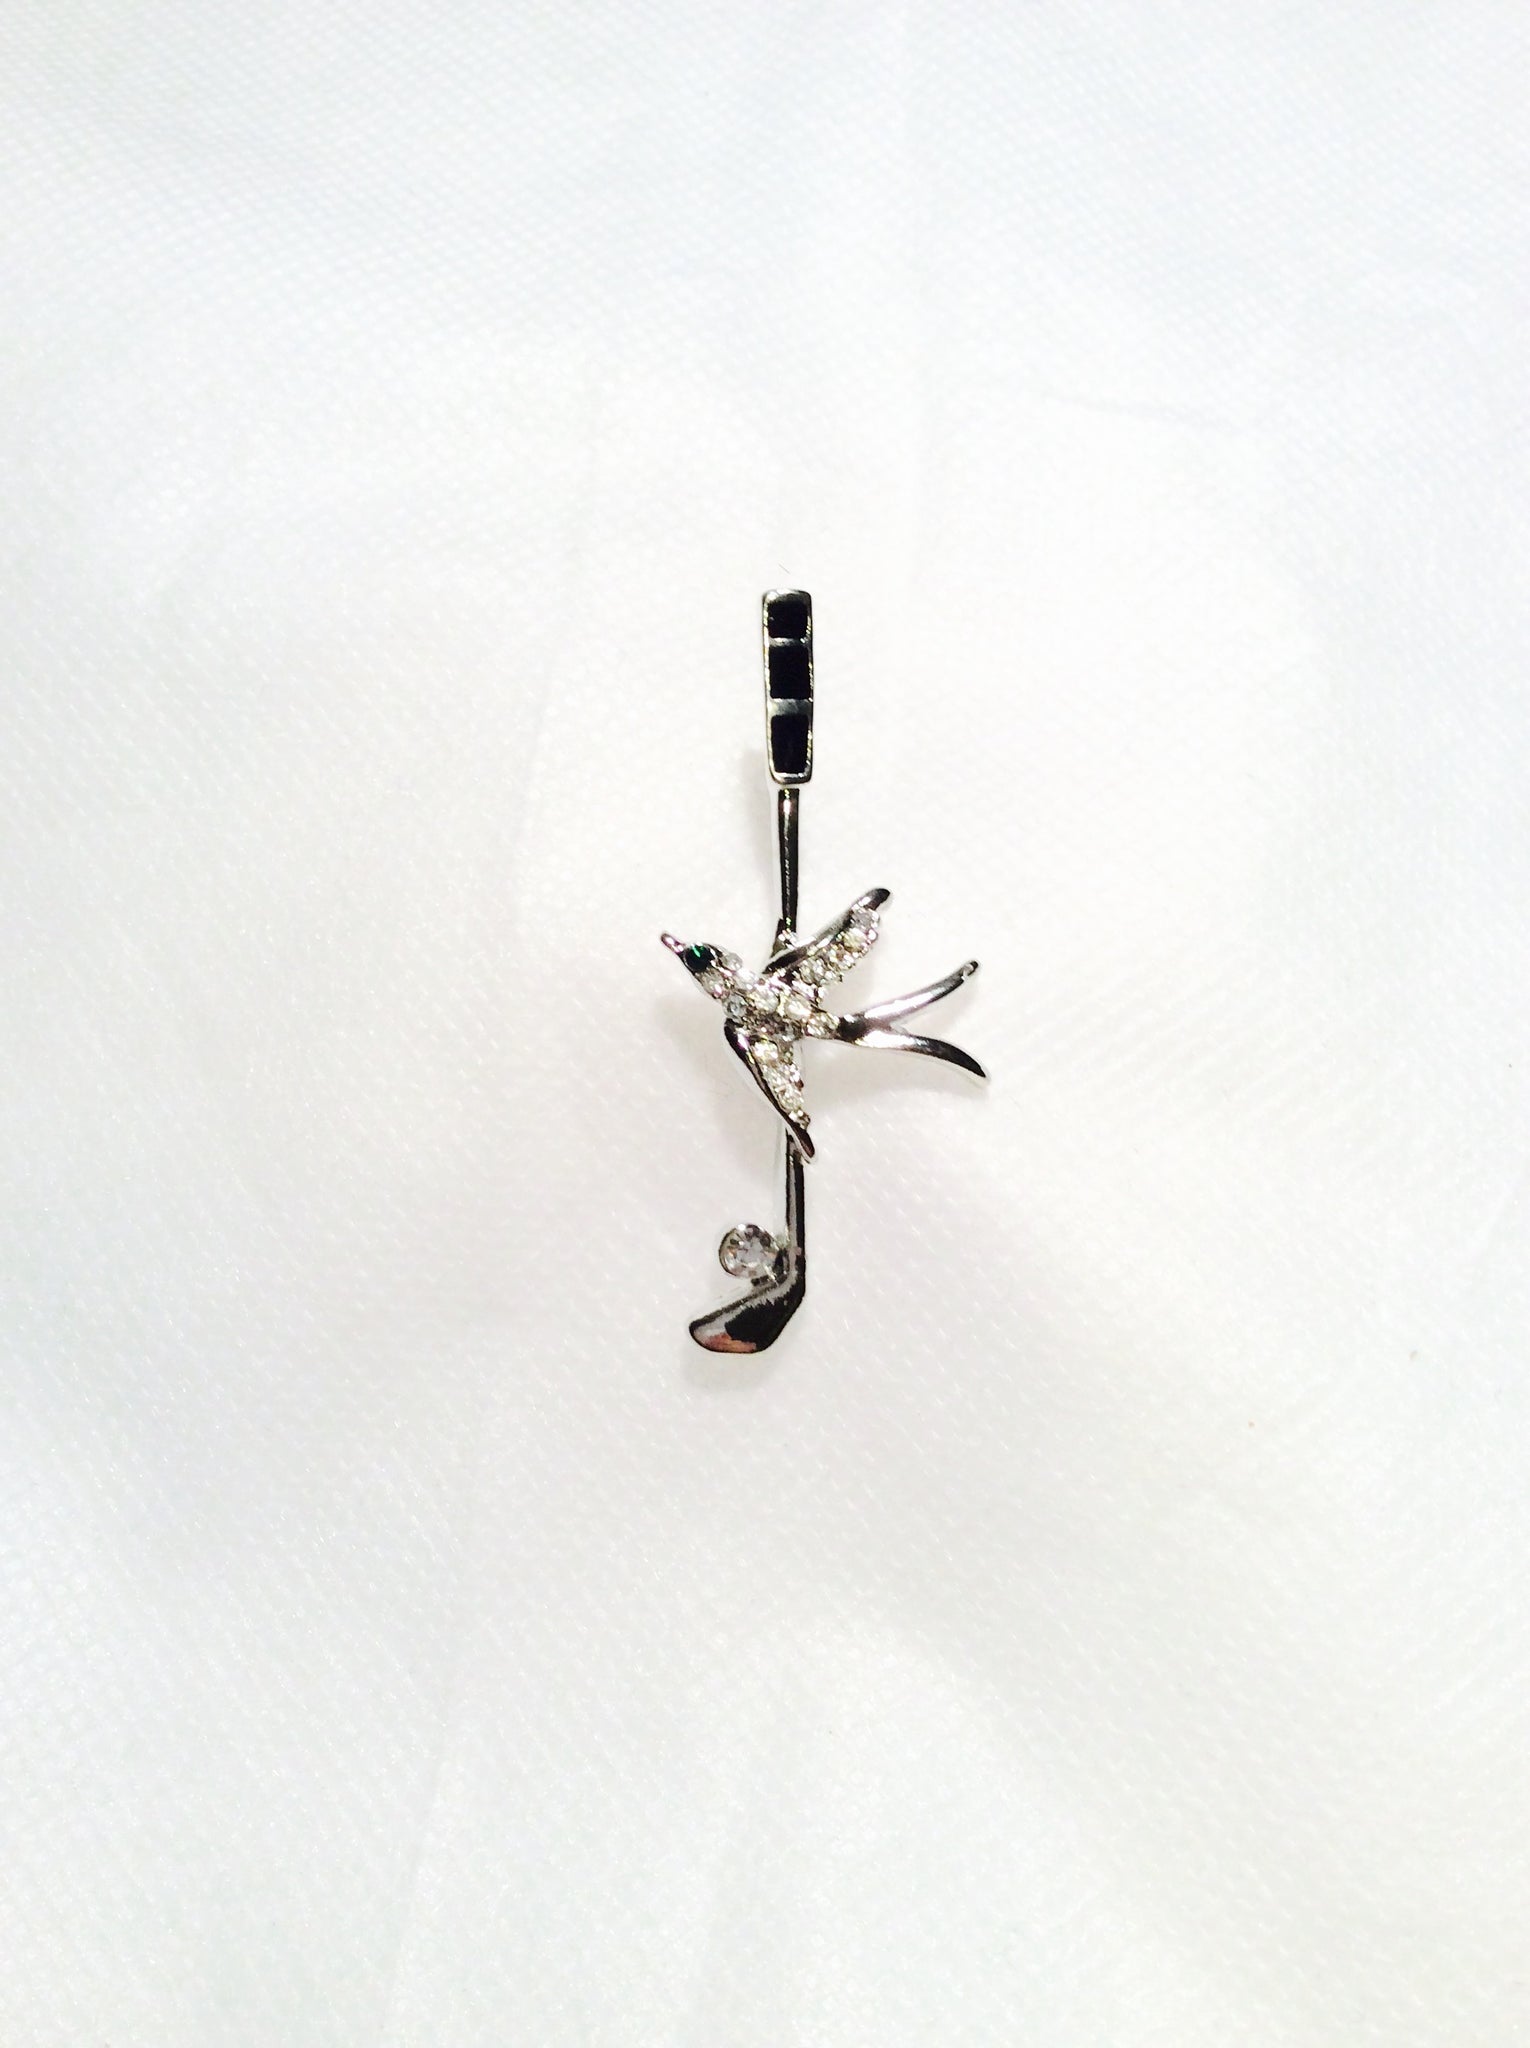 Golf Stick with Bird Tack Pin#24-0030